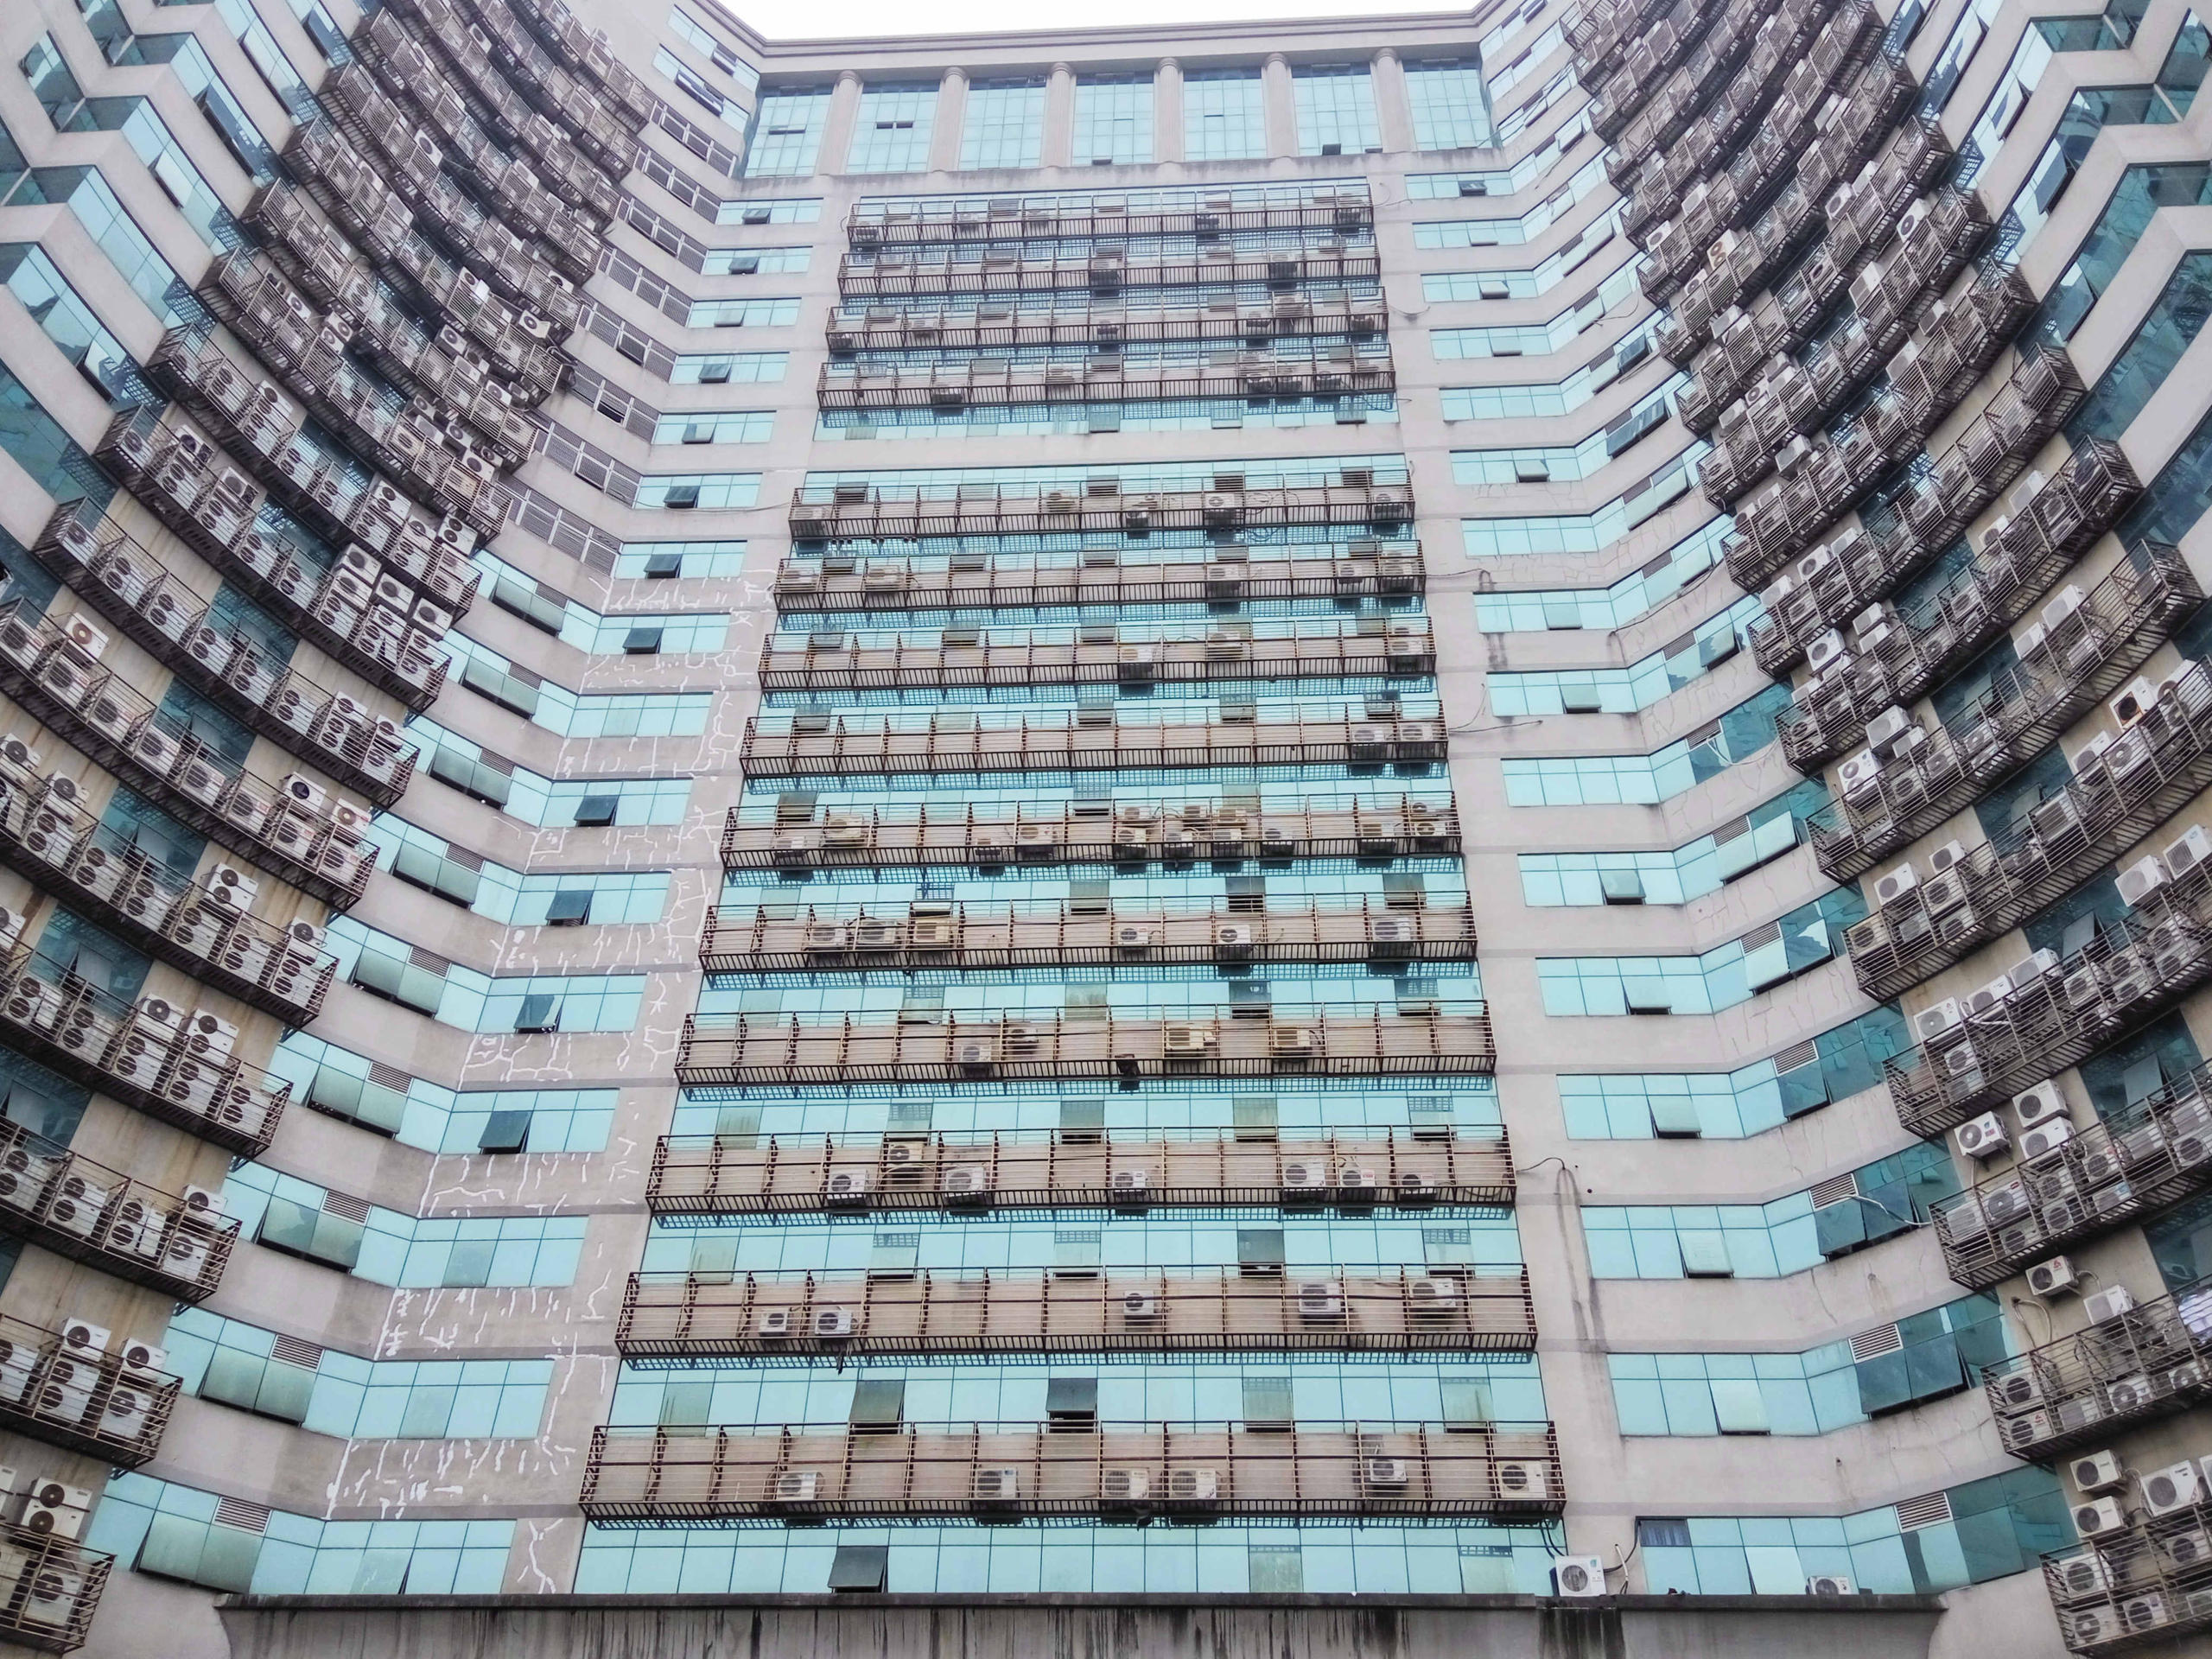 الجزء السفلي لعمارة شاهقة في الصين ومكيفات الهواء في كل الشقق